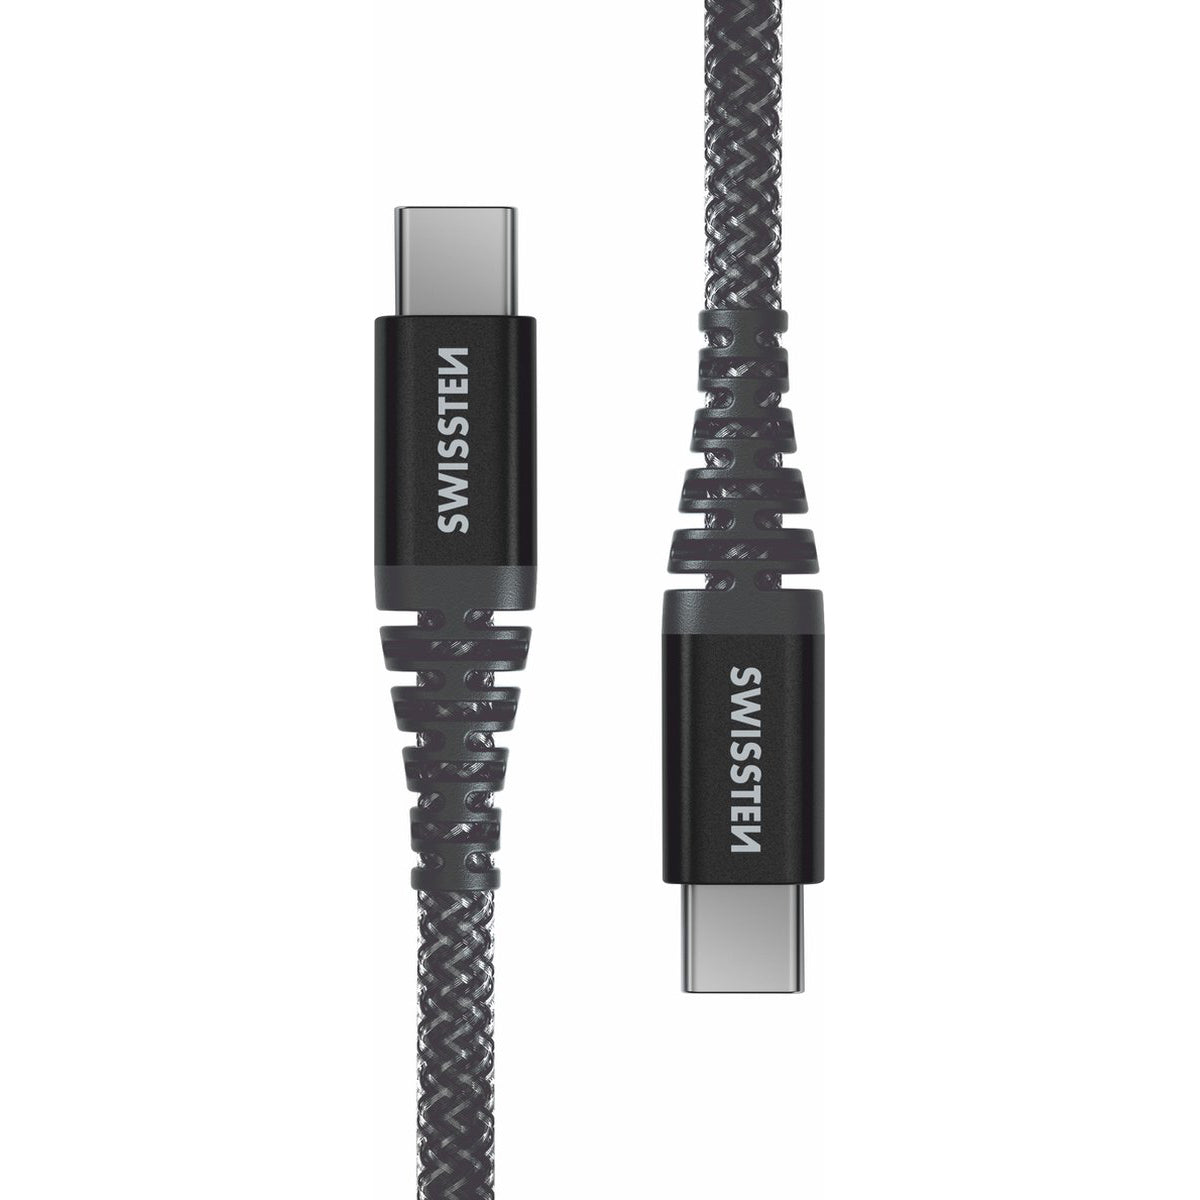 Swissten - Câble USB-C / USB-C en kevlar